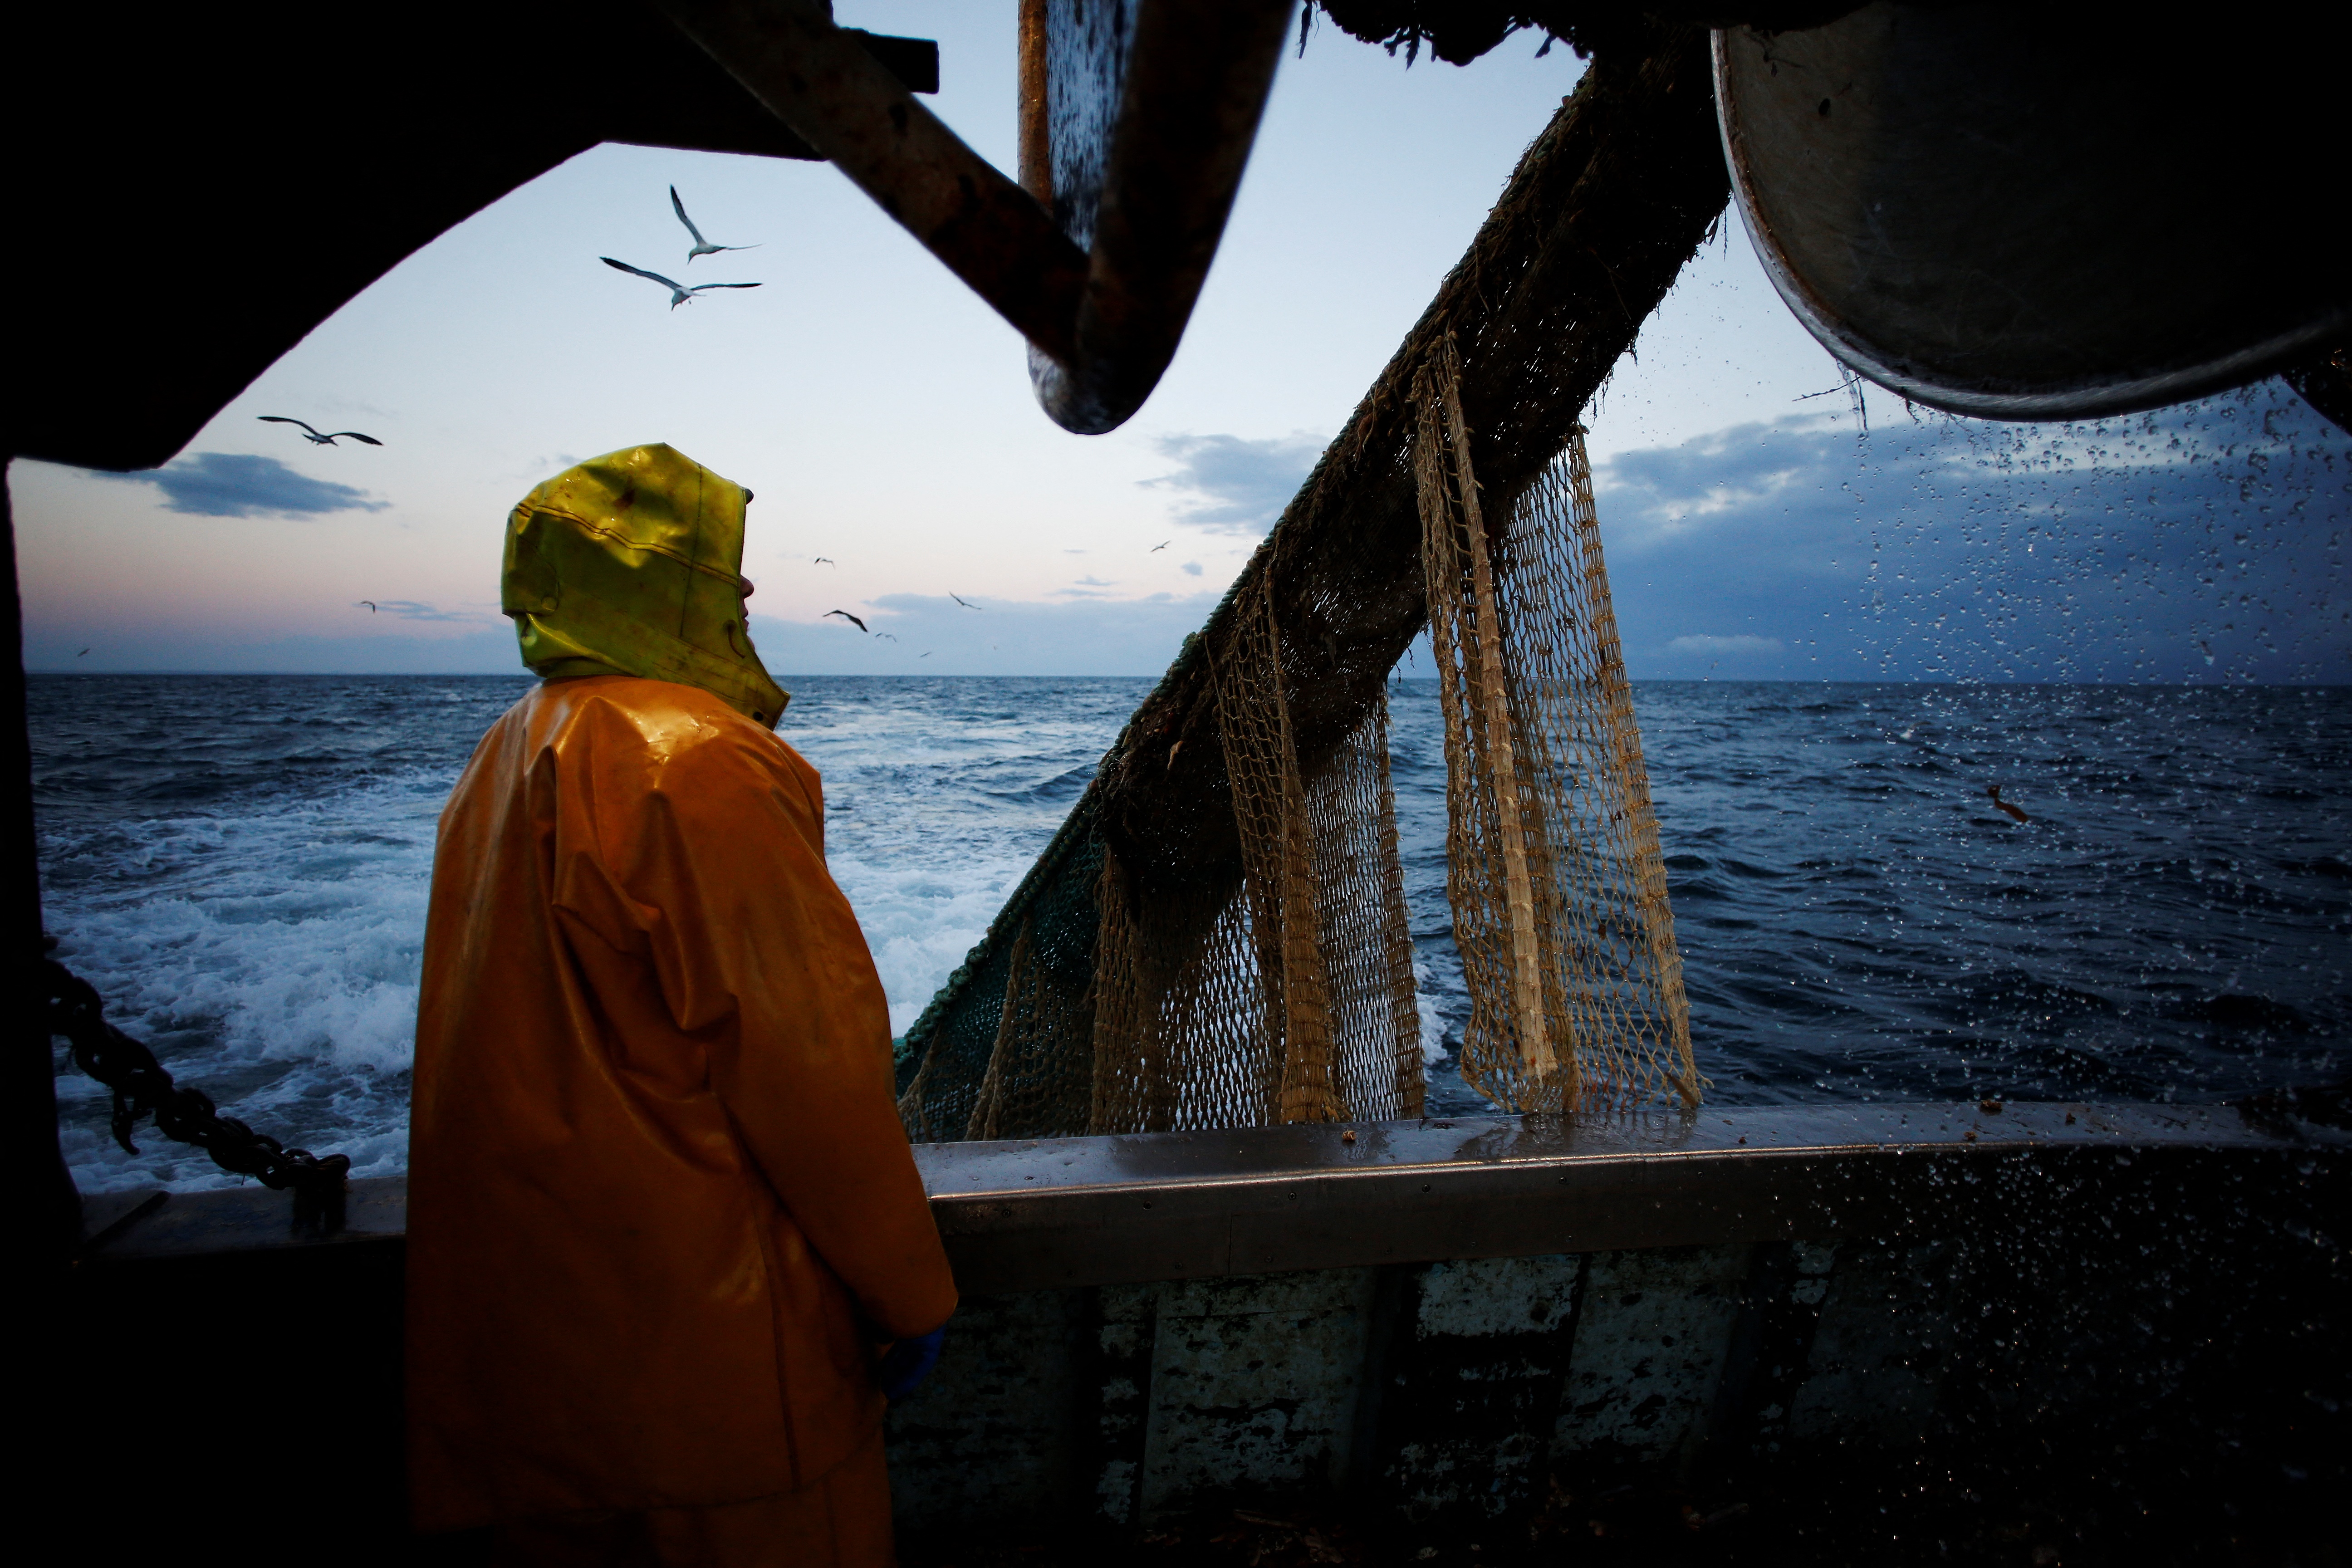 A vonóhálós halászat árt a bolygónak, de a halászoknak sem használ